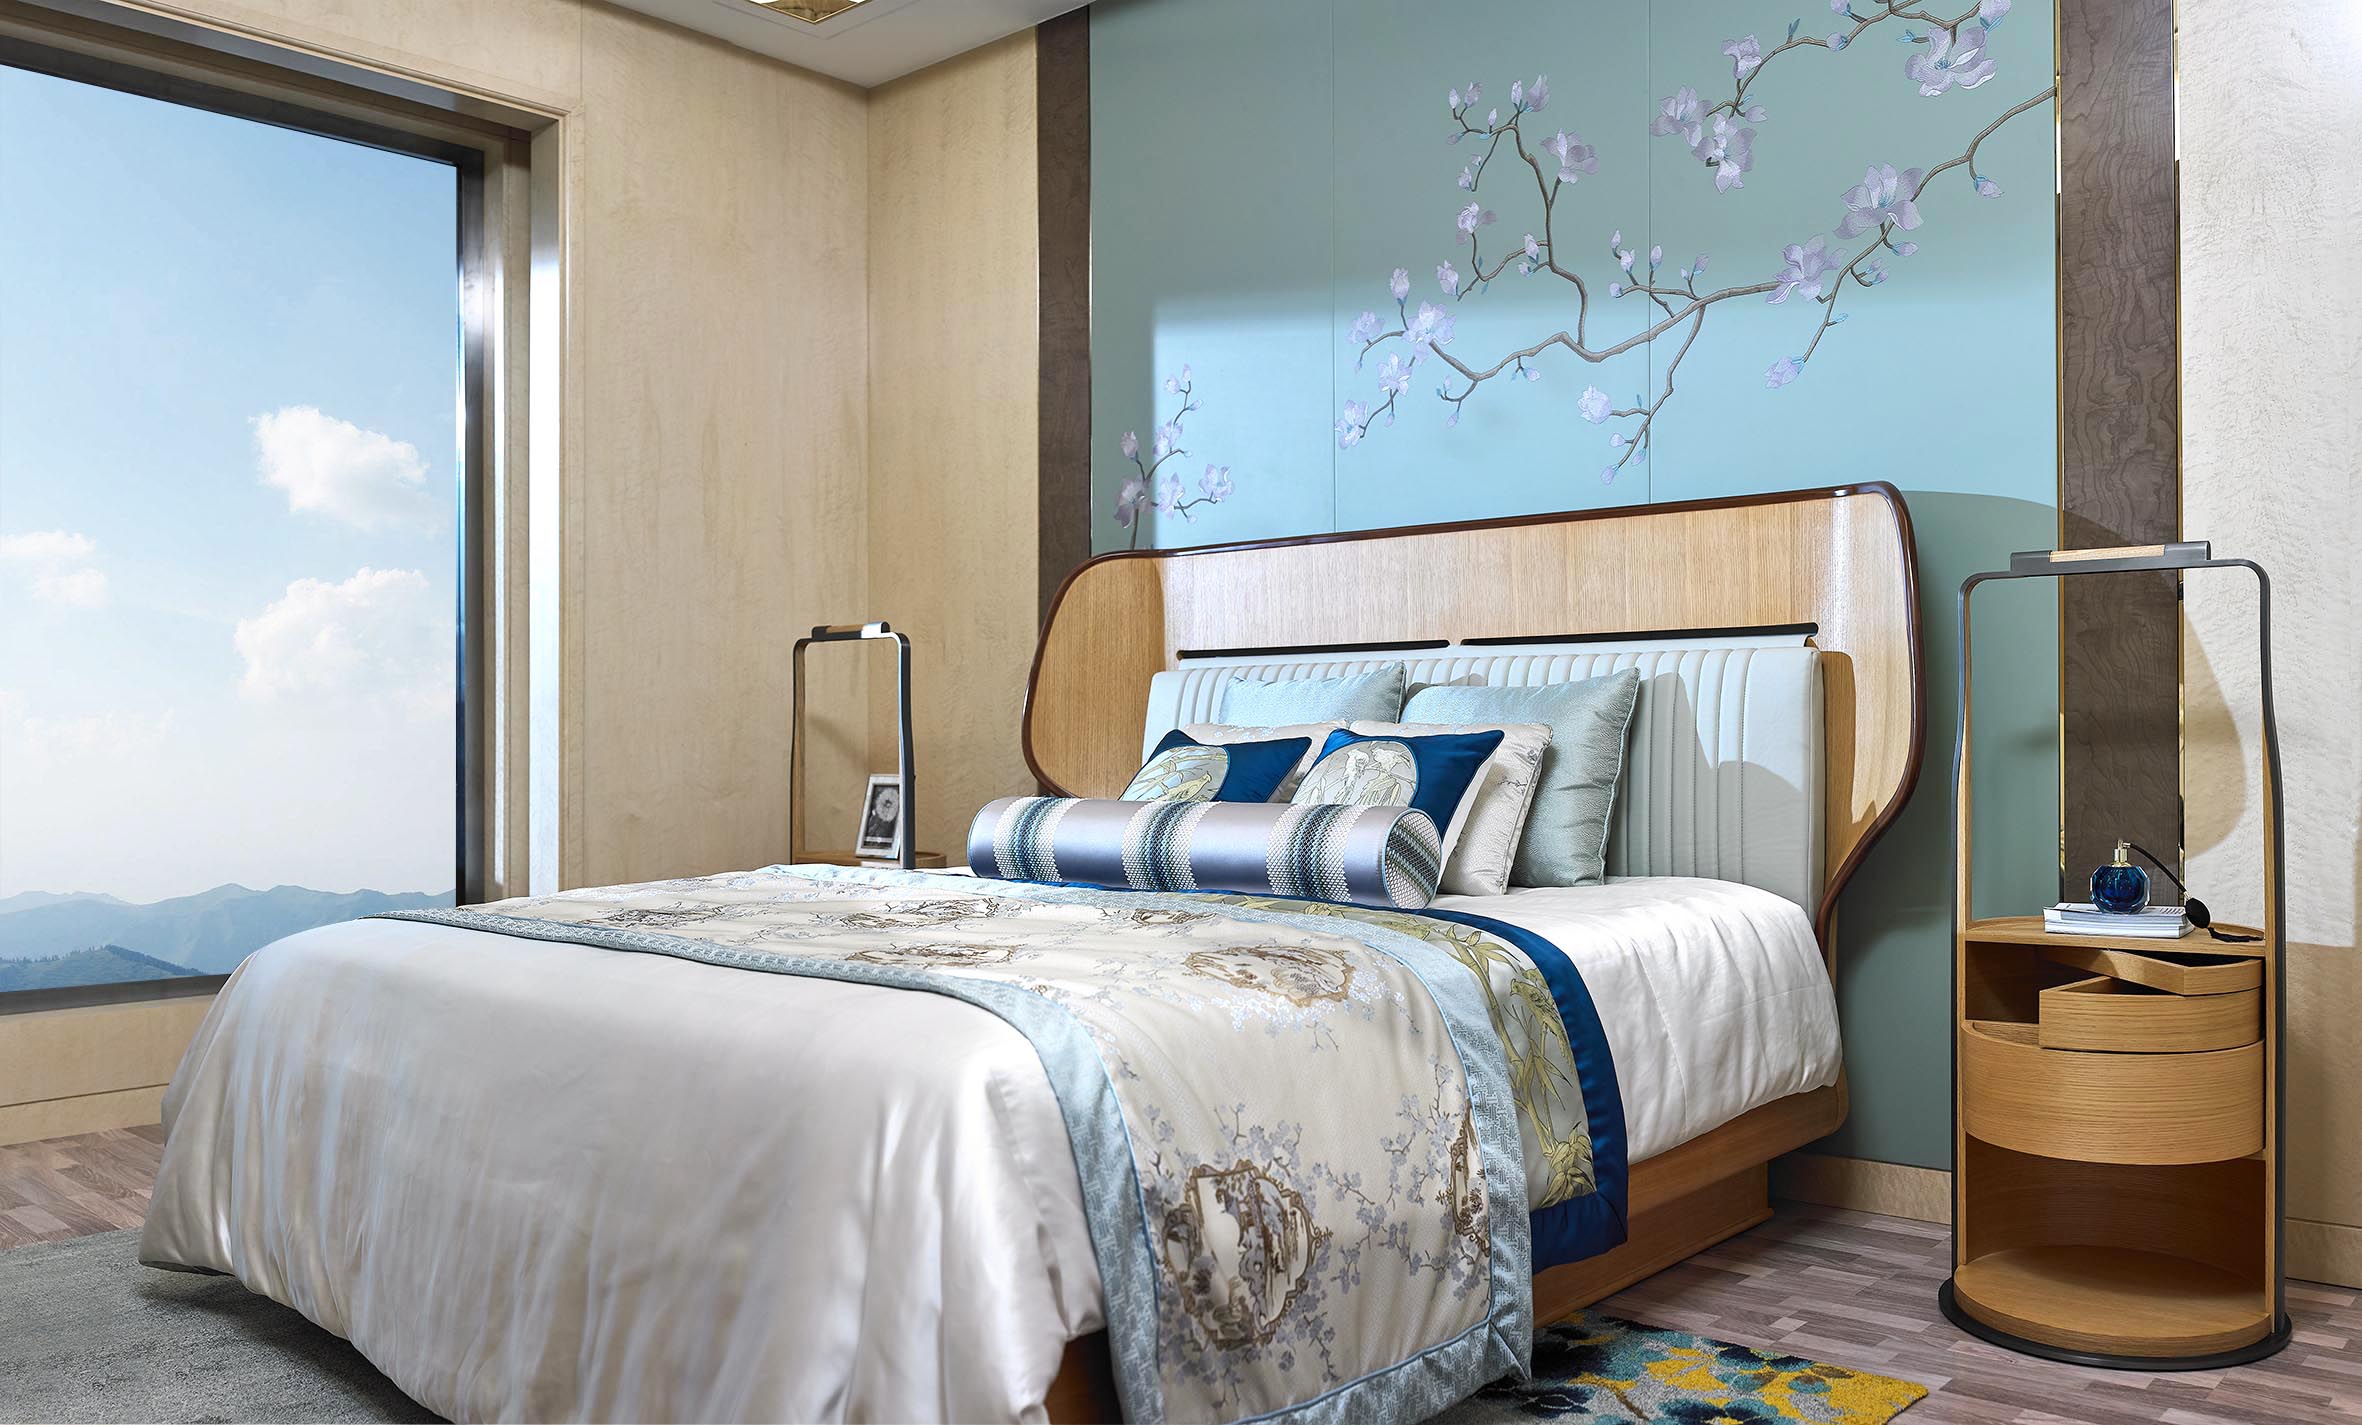 中国モダンホテル住宅プロジェクトフルホテル家具木製コンプリートベッドルーム家具